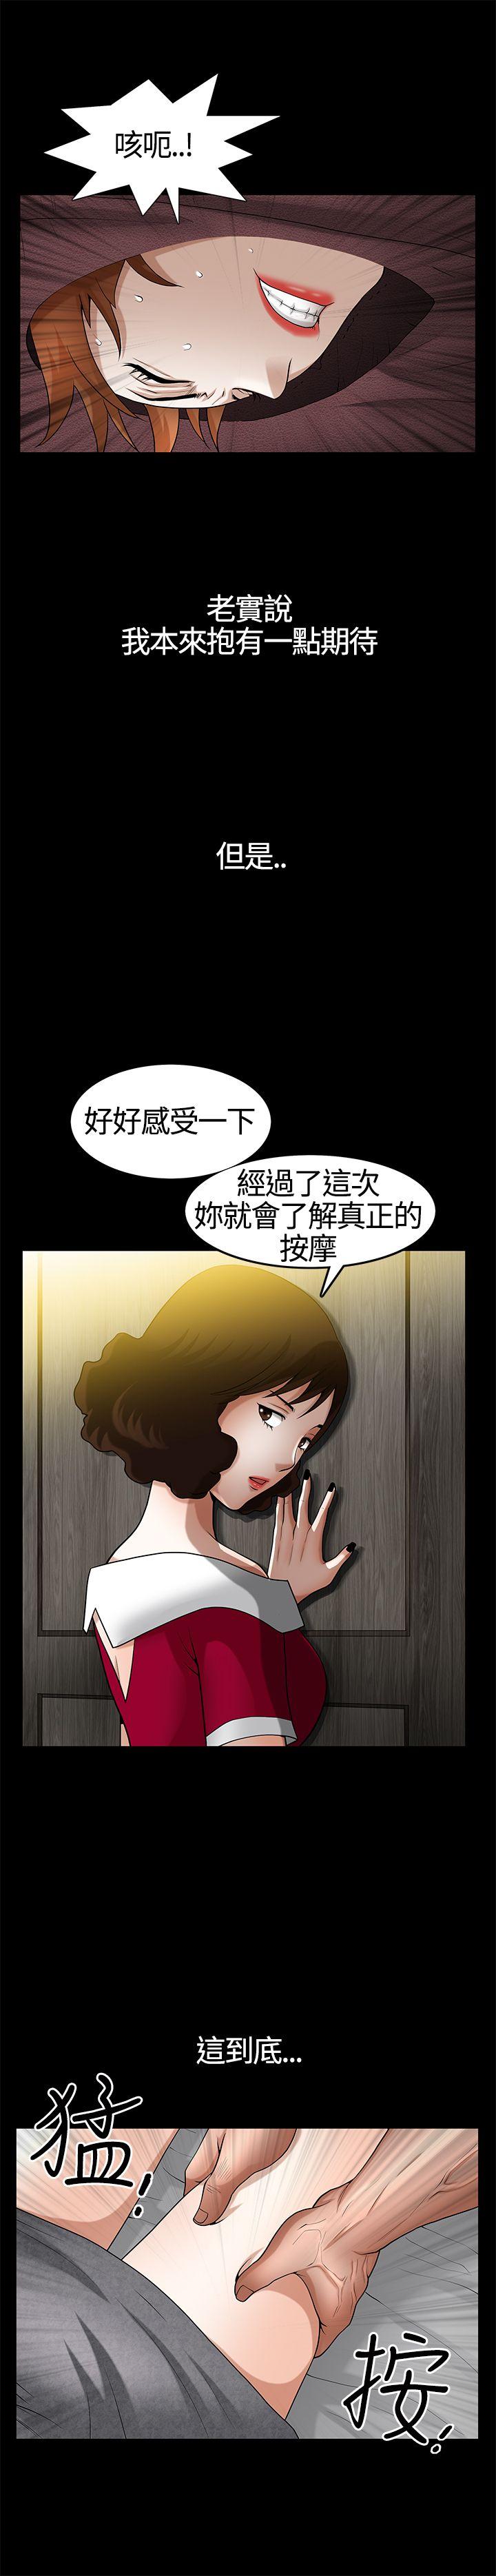 韩国污漫画 人妻性解放3:粗糙的手 第19话 16